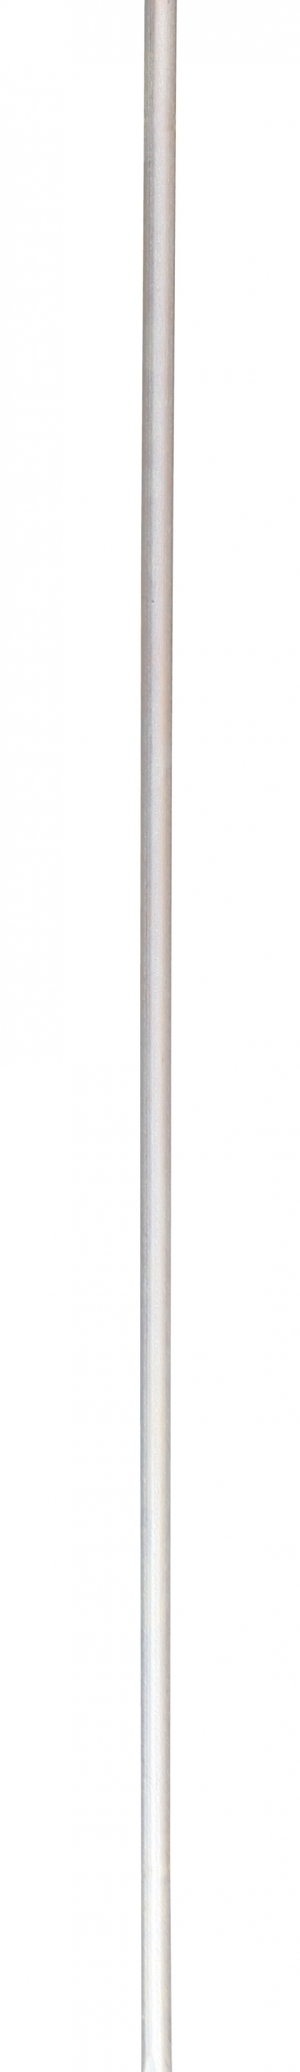 Piquet de terre, 1 m 12 mm, sans pince